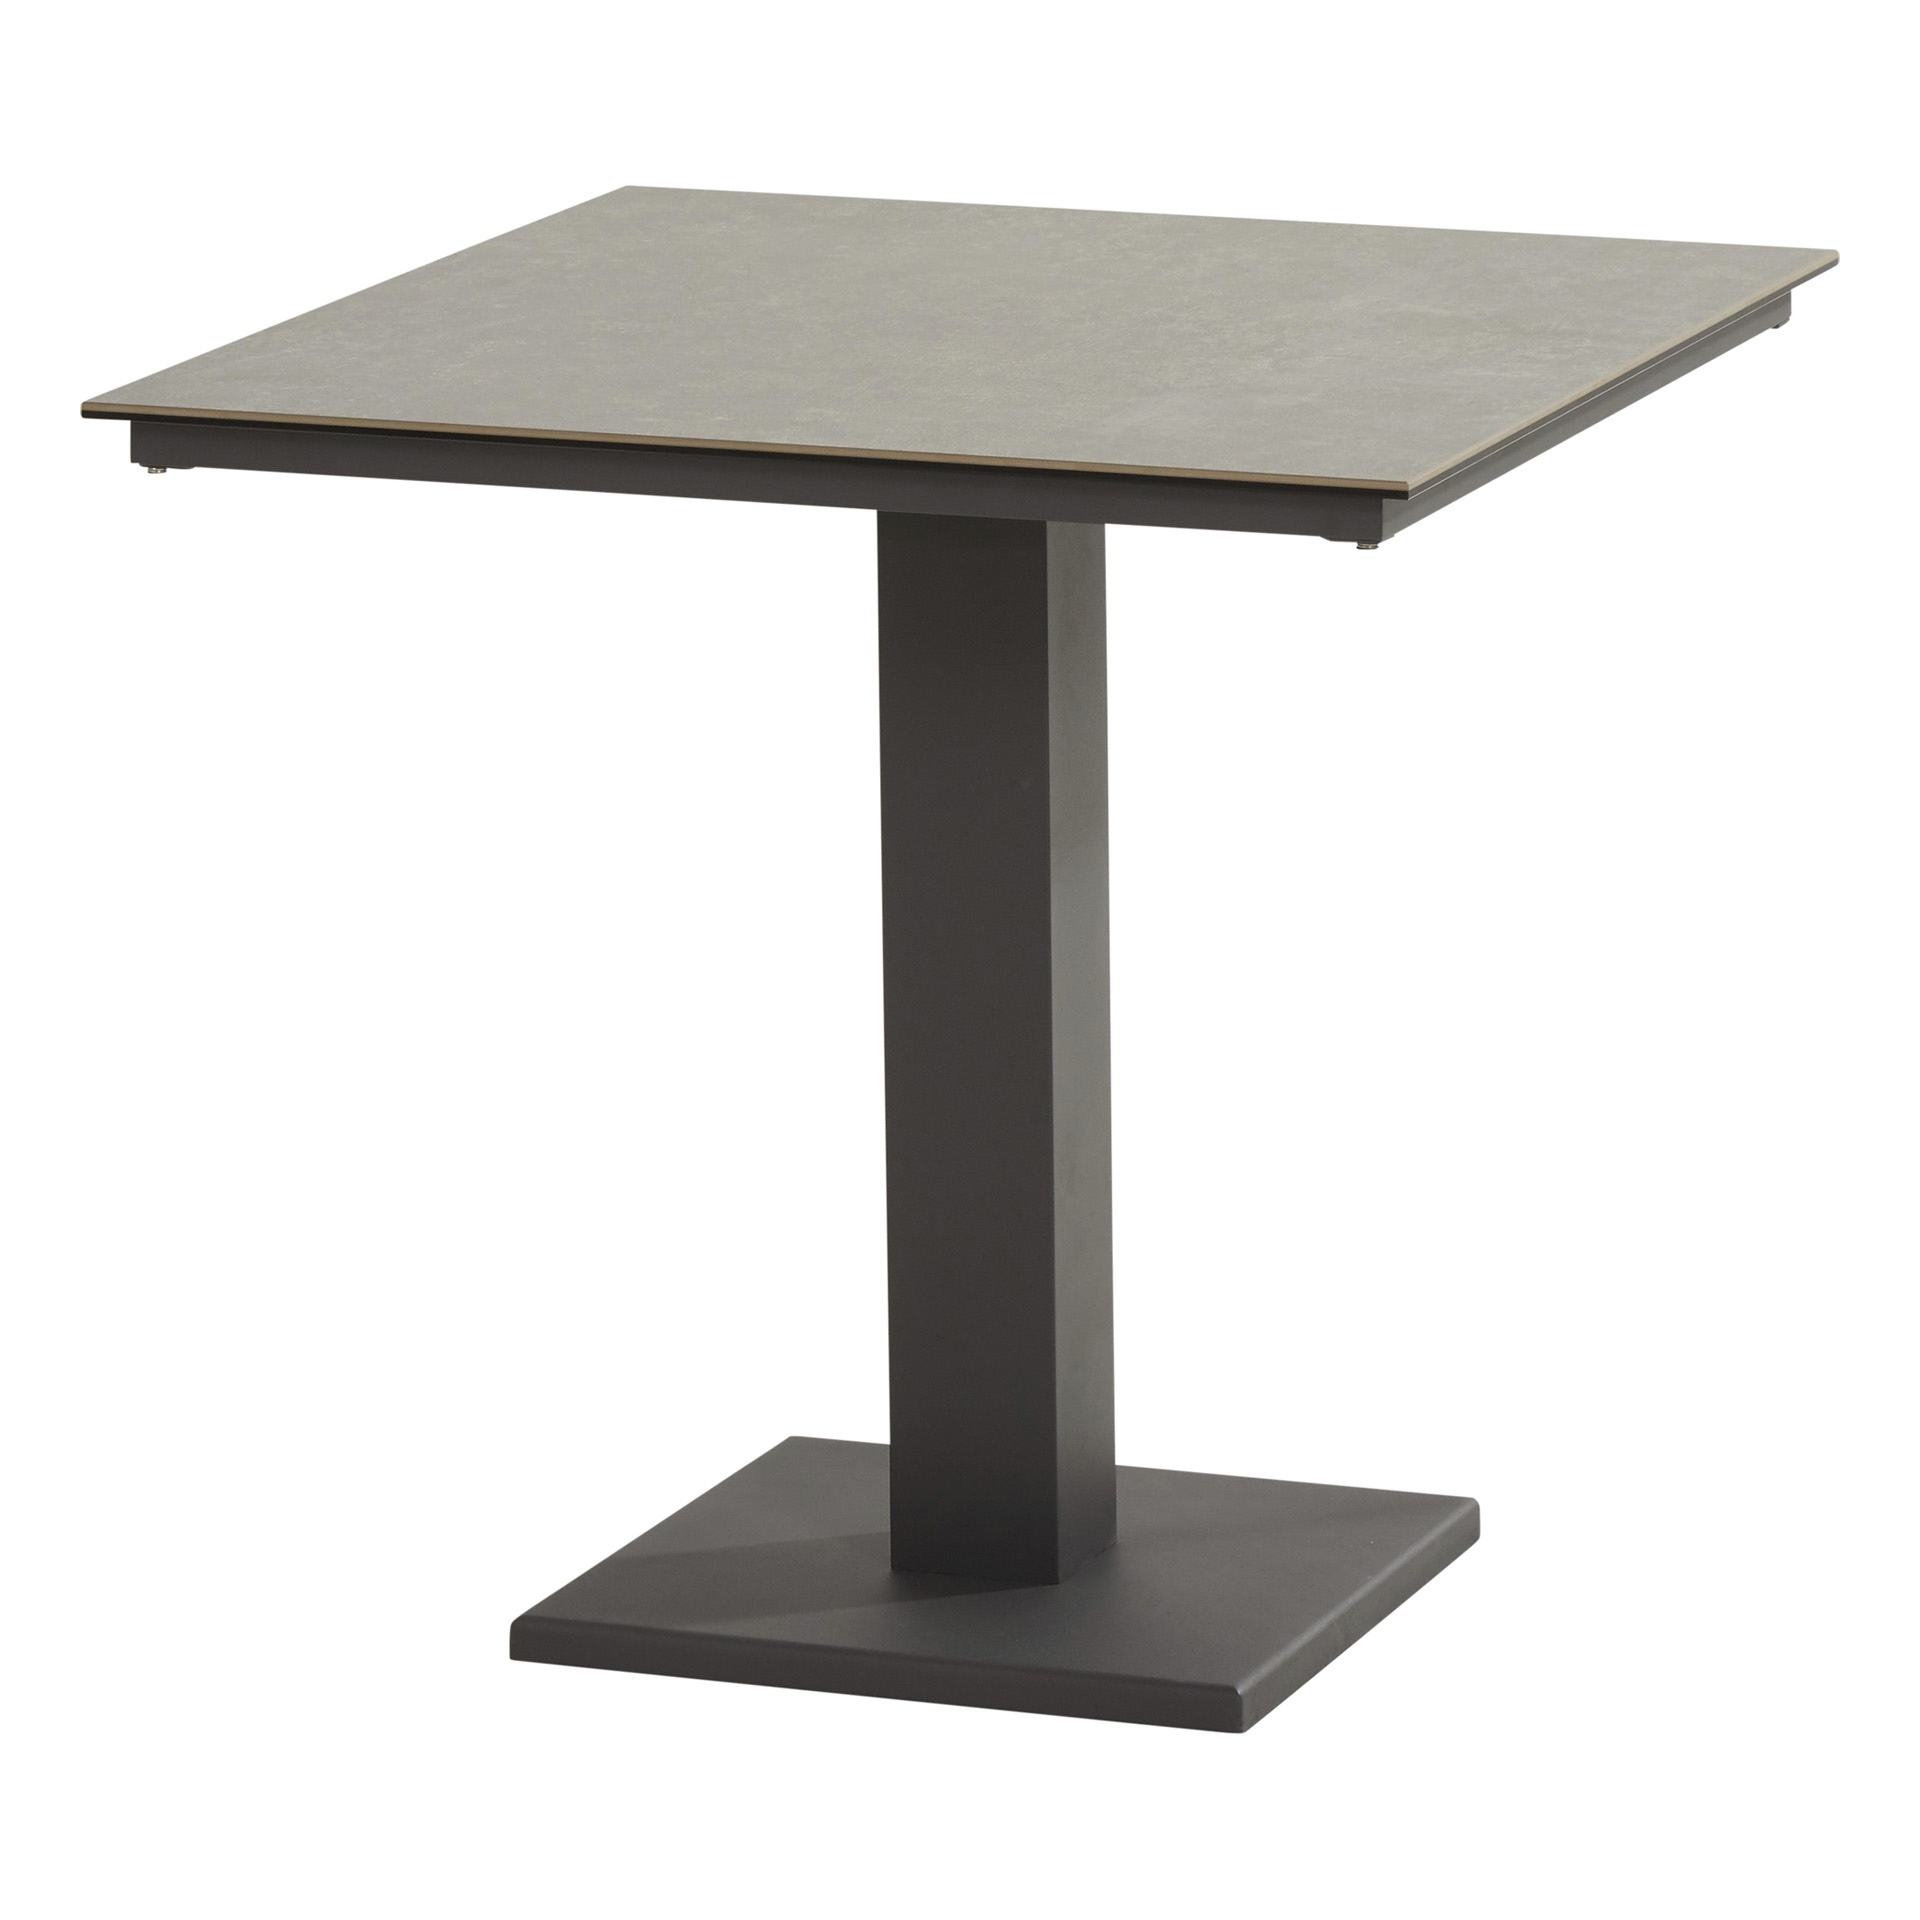 Titan dining table 75x75 ceramic Antracite